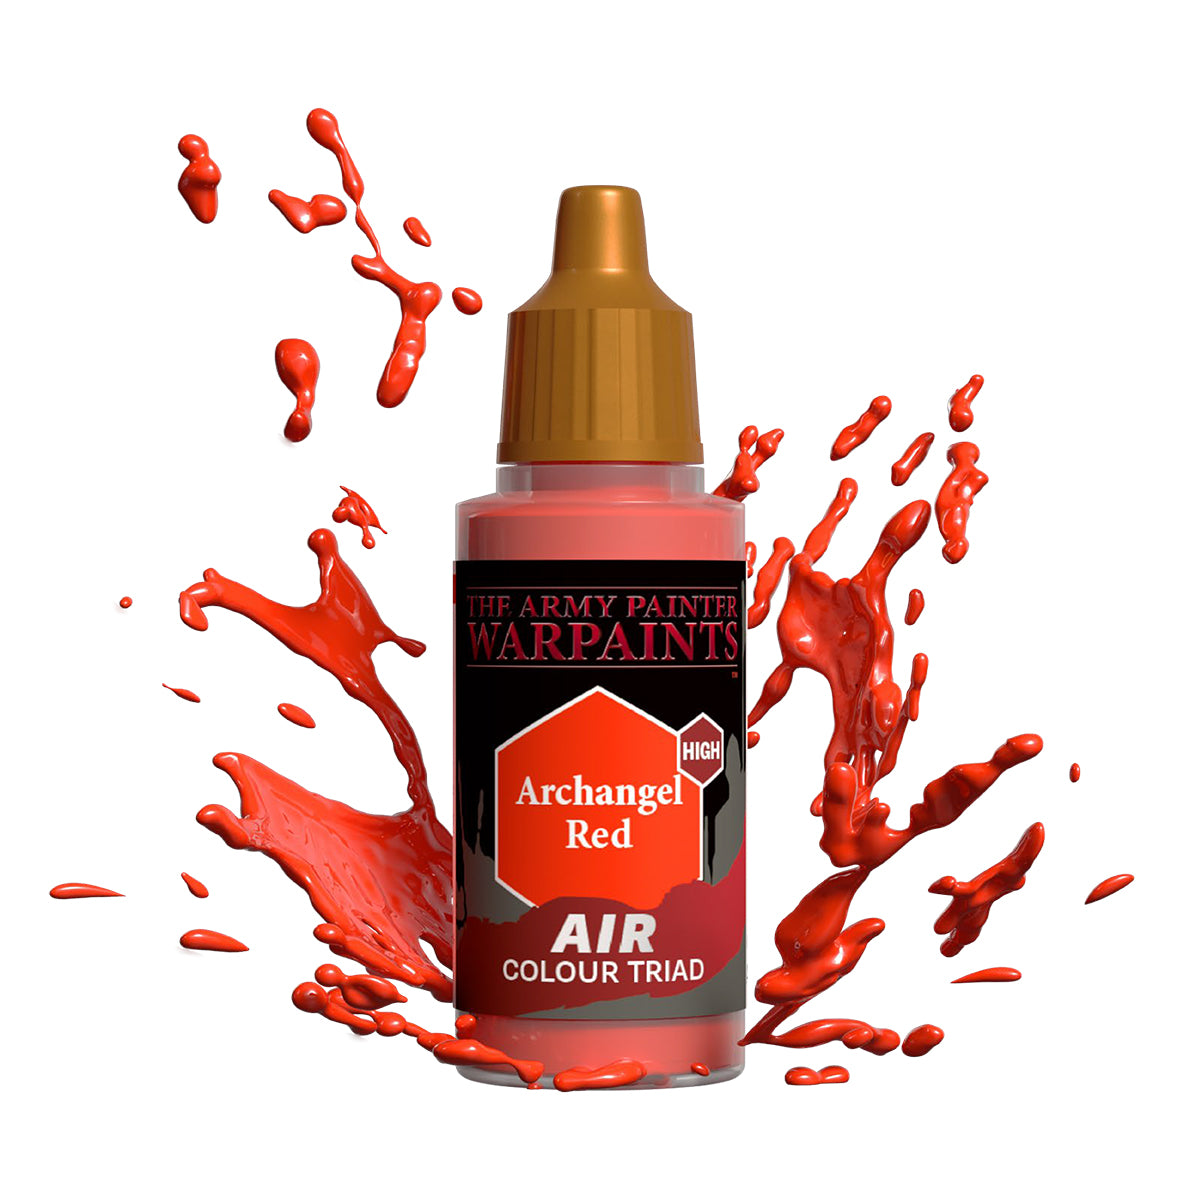 Warpaints Air: Archangel Red